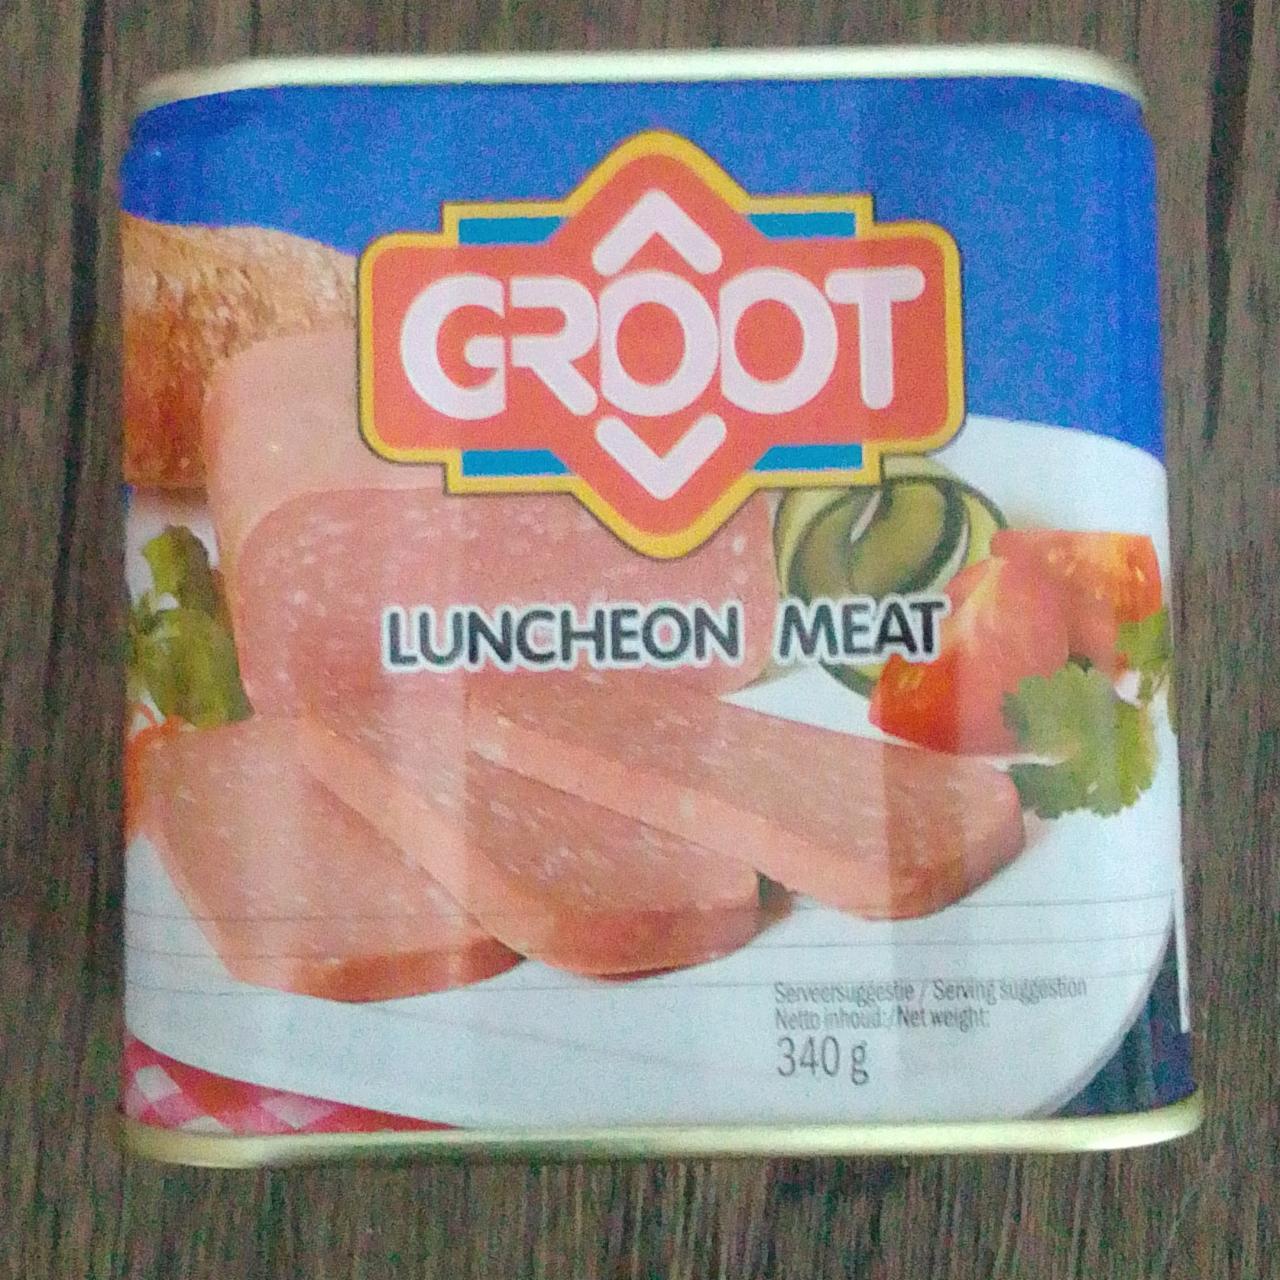 Фото - М'ясна консерва Luncheon Meat Groot